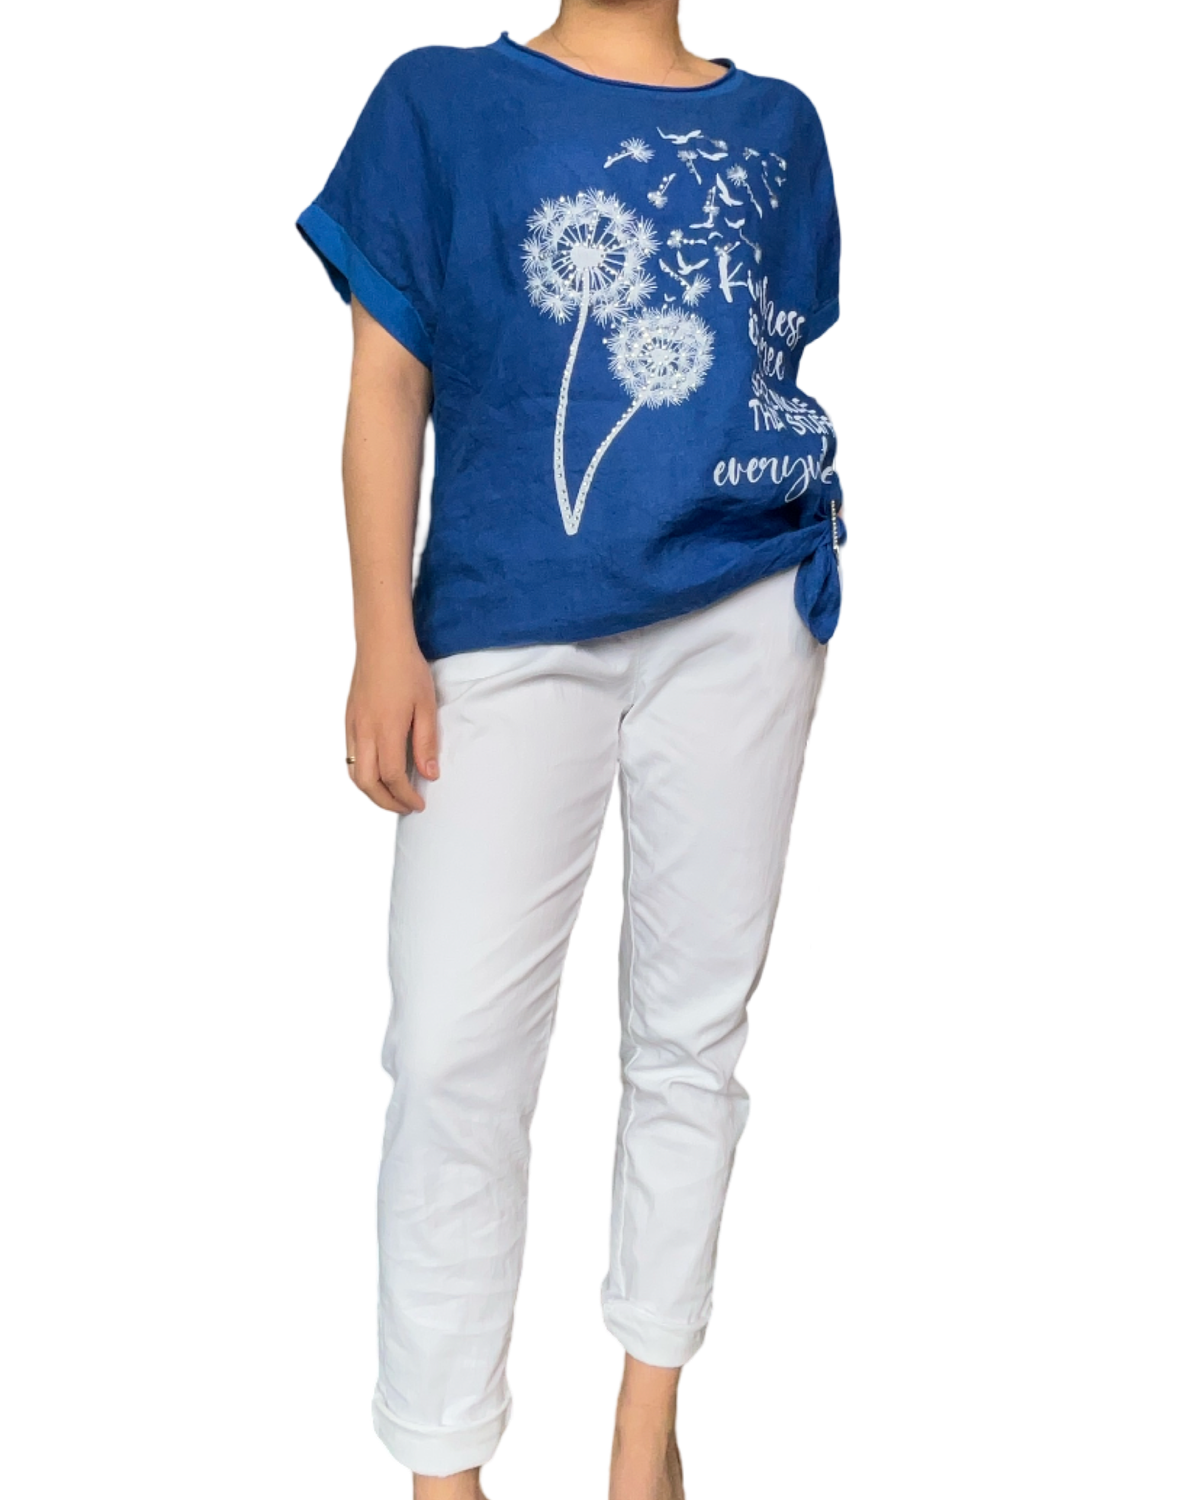 T-shirt bleu royal pour femme avec imprimé de pissenlits avec pantalon blanc.